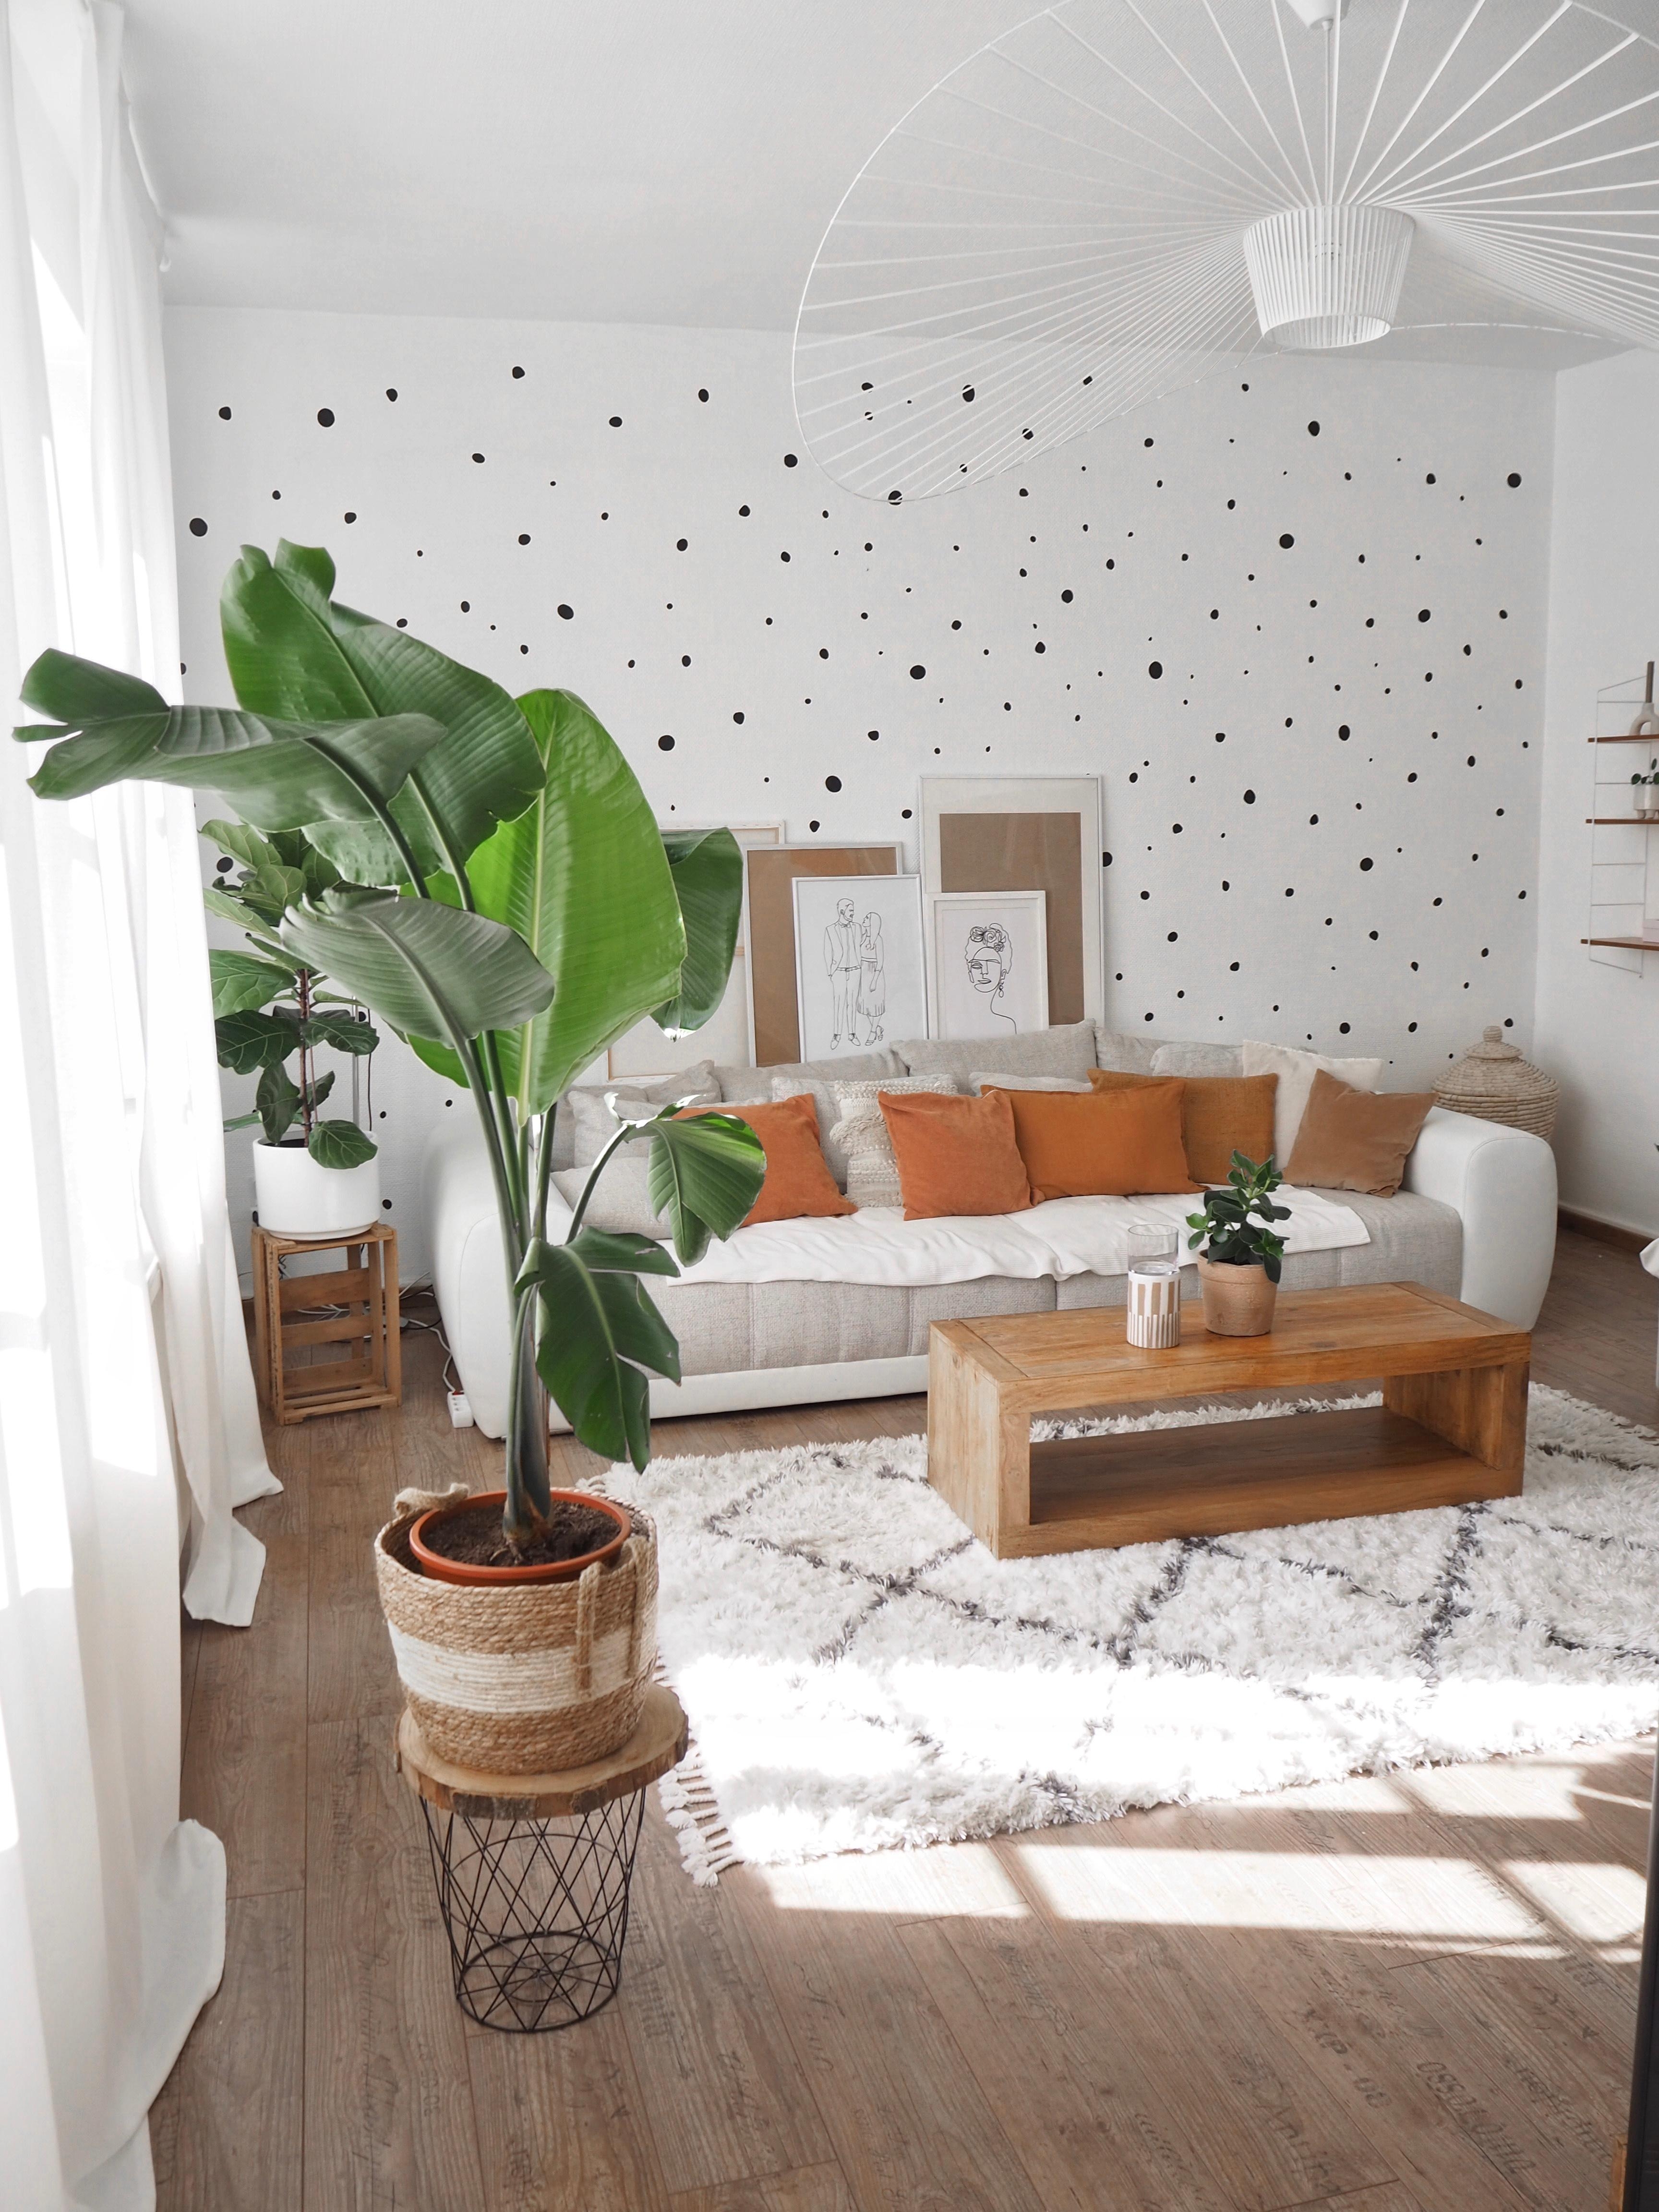 #wohnzimmer #wandgestaltung #strelitzie #pflanzen #grossepflanzen #deckenlampe #kissen #leinen #samt #jute #kord #holz